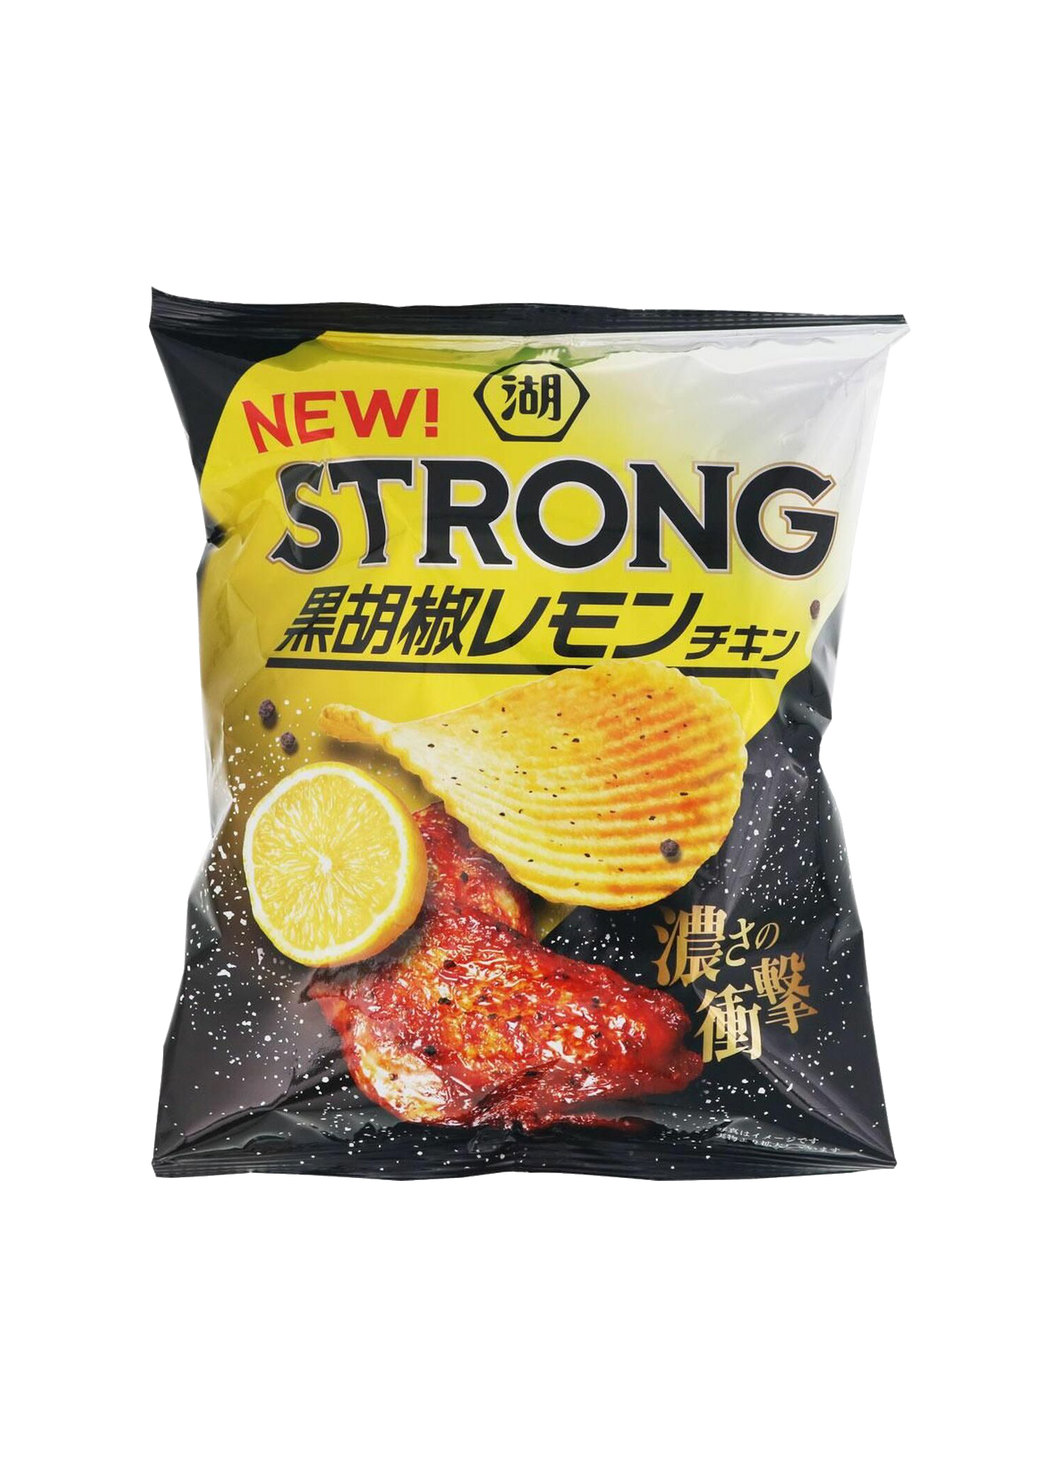 Koikeya Strong! Chicken 56g